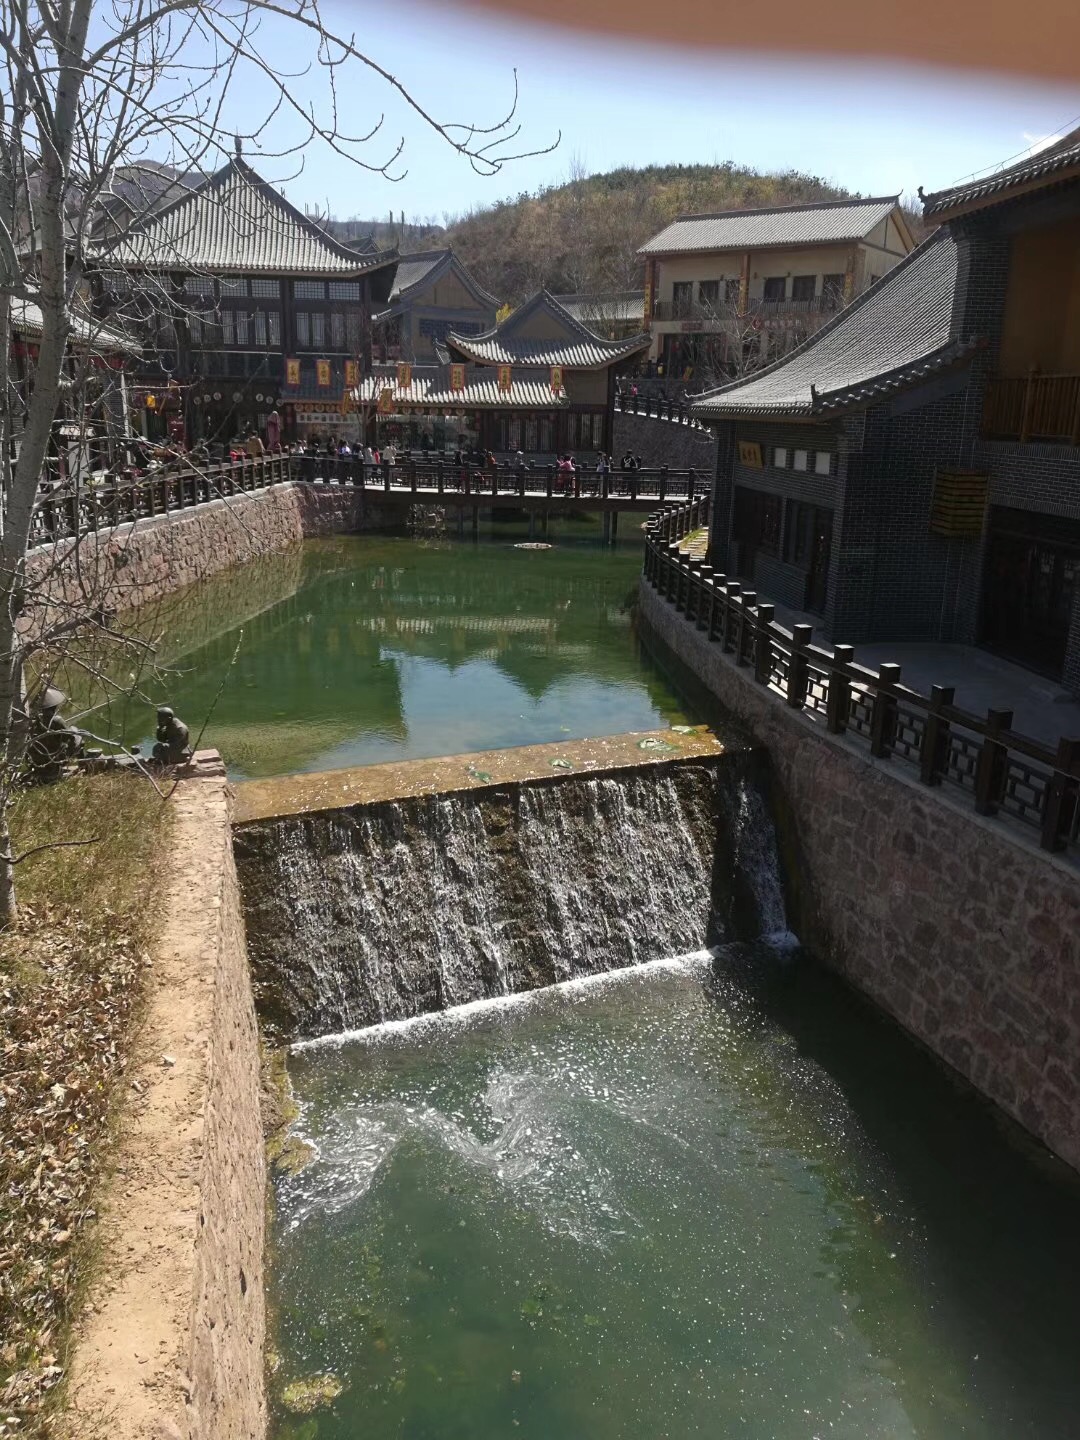 贵州全自动农村生活污水处理设备 贵州美丽农村生活污水处理设备